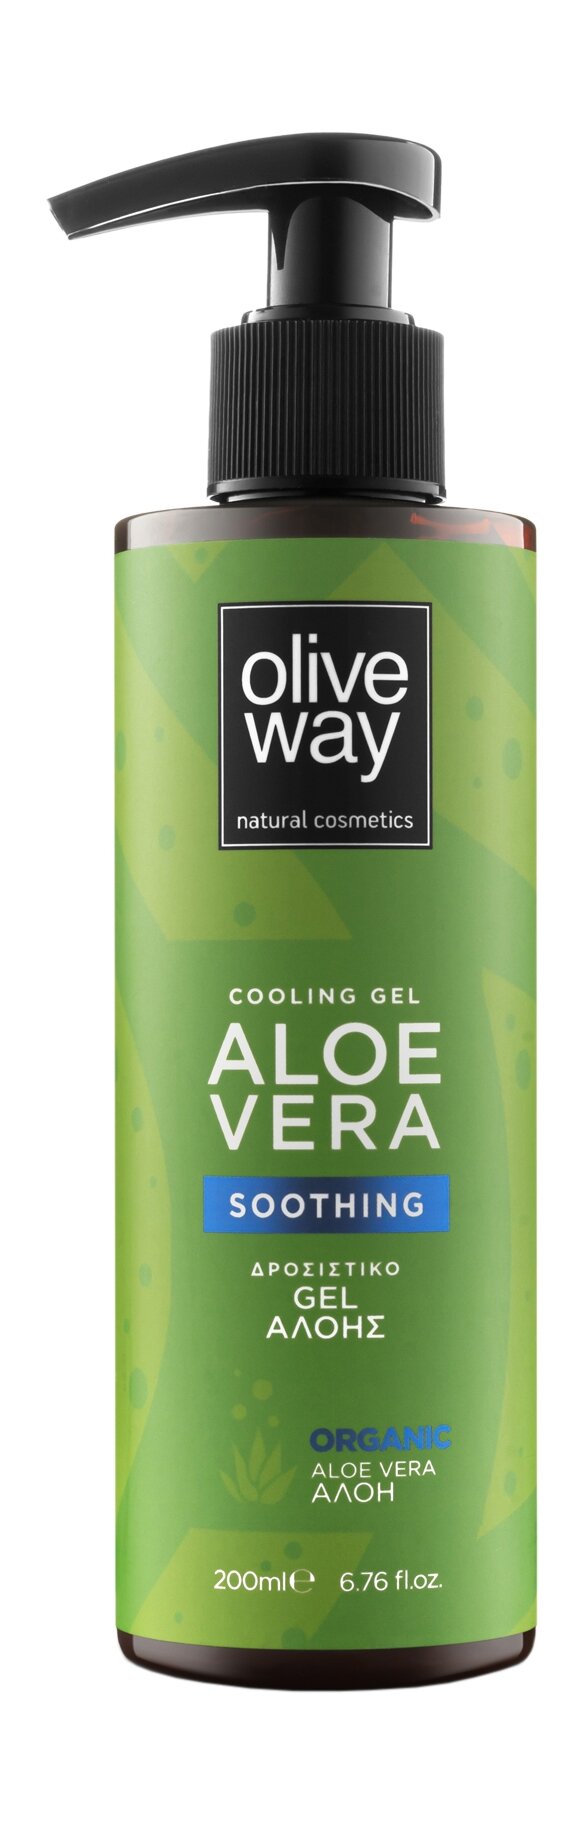 OLIVEWAY Cooling Gel Aloe Vera Гель для тела смягчающий, охлаждающий алоэ вера, 200 мл